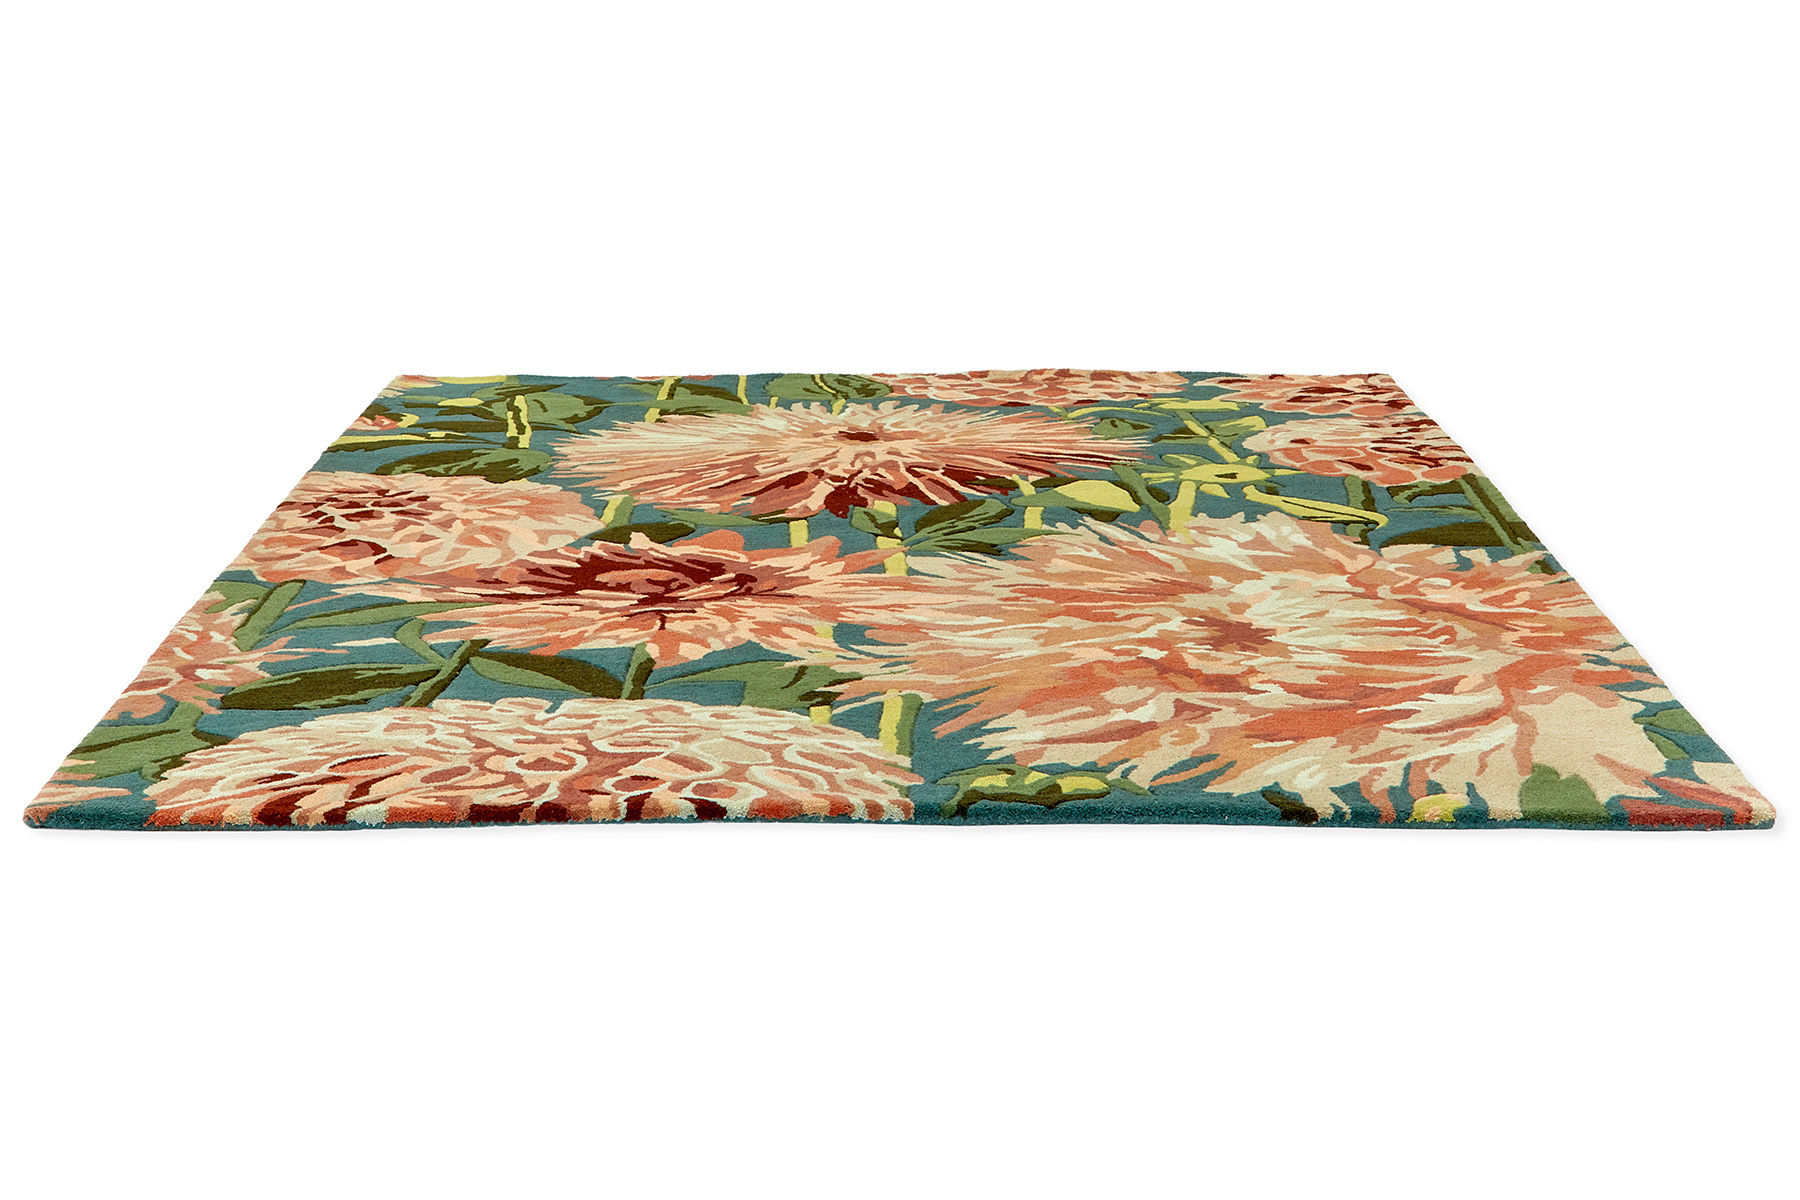 Dahlia Coral / Wilderness Designer Rug ☞ Size: 8' 2" x 11' 6" (250 x 350 cm)